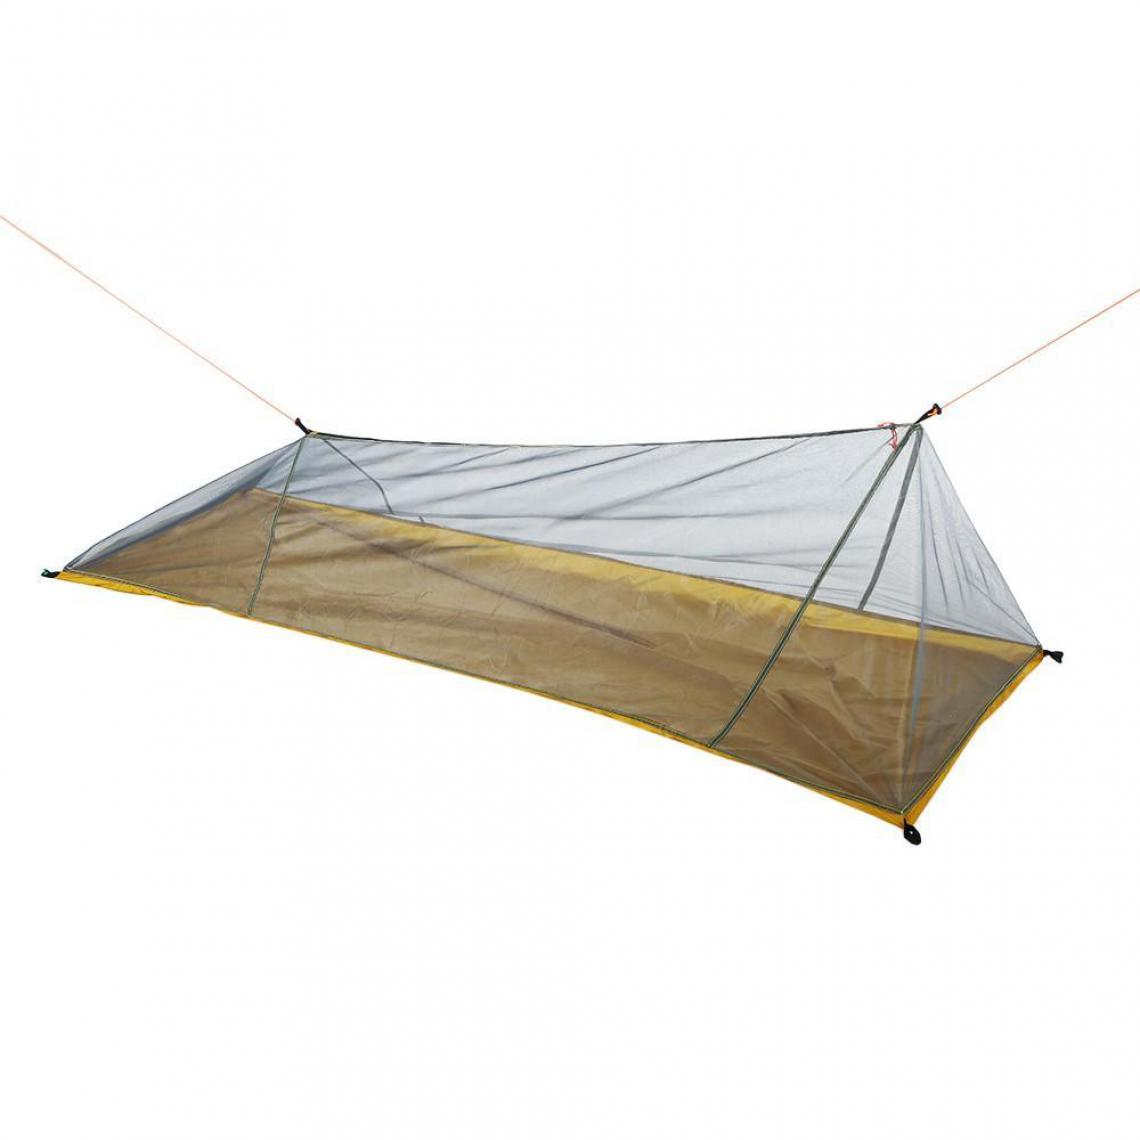 Justgreenbox - Filet répulsif d'insecte de moustique de maille ultra-légère de tente de camping en plein air - 4000054472197 - Pergolas et Tonnelles